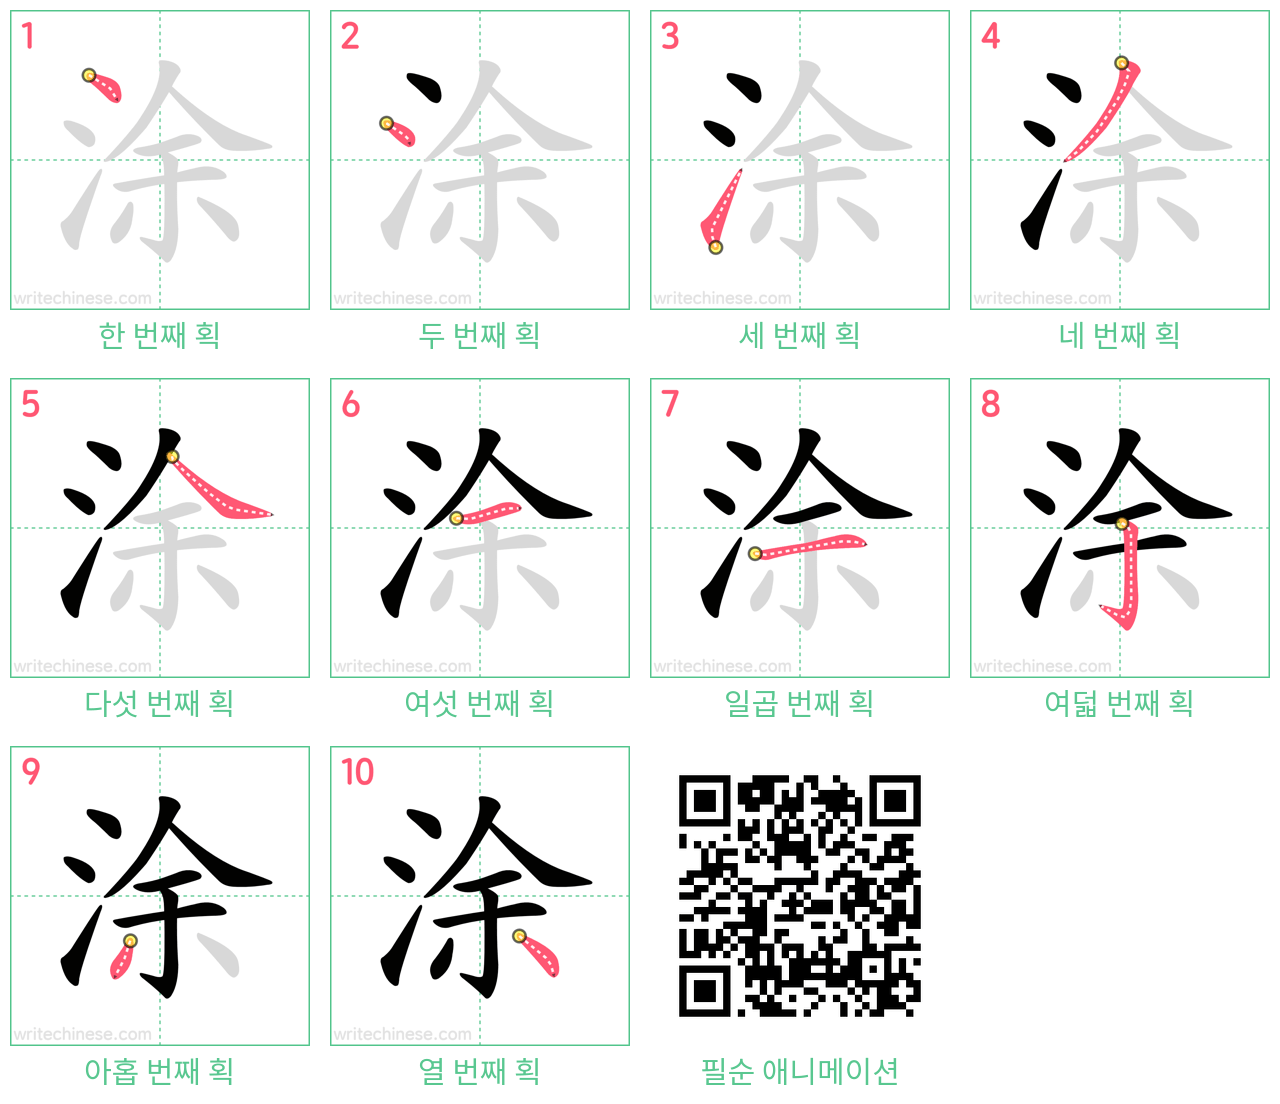 涂 step-by-step stroke order diagrams